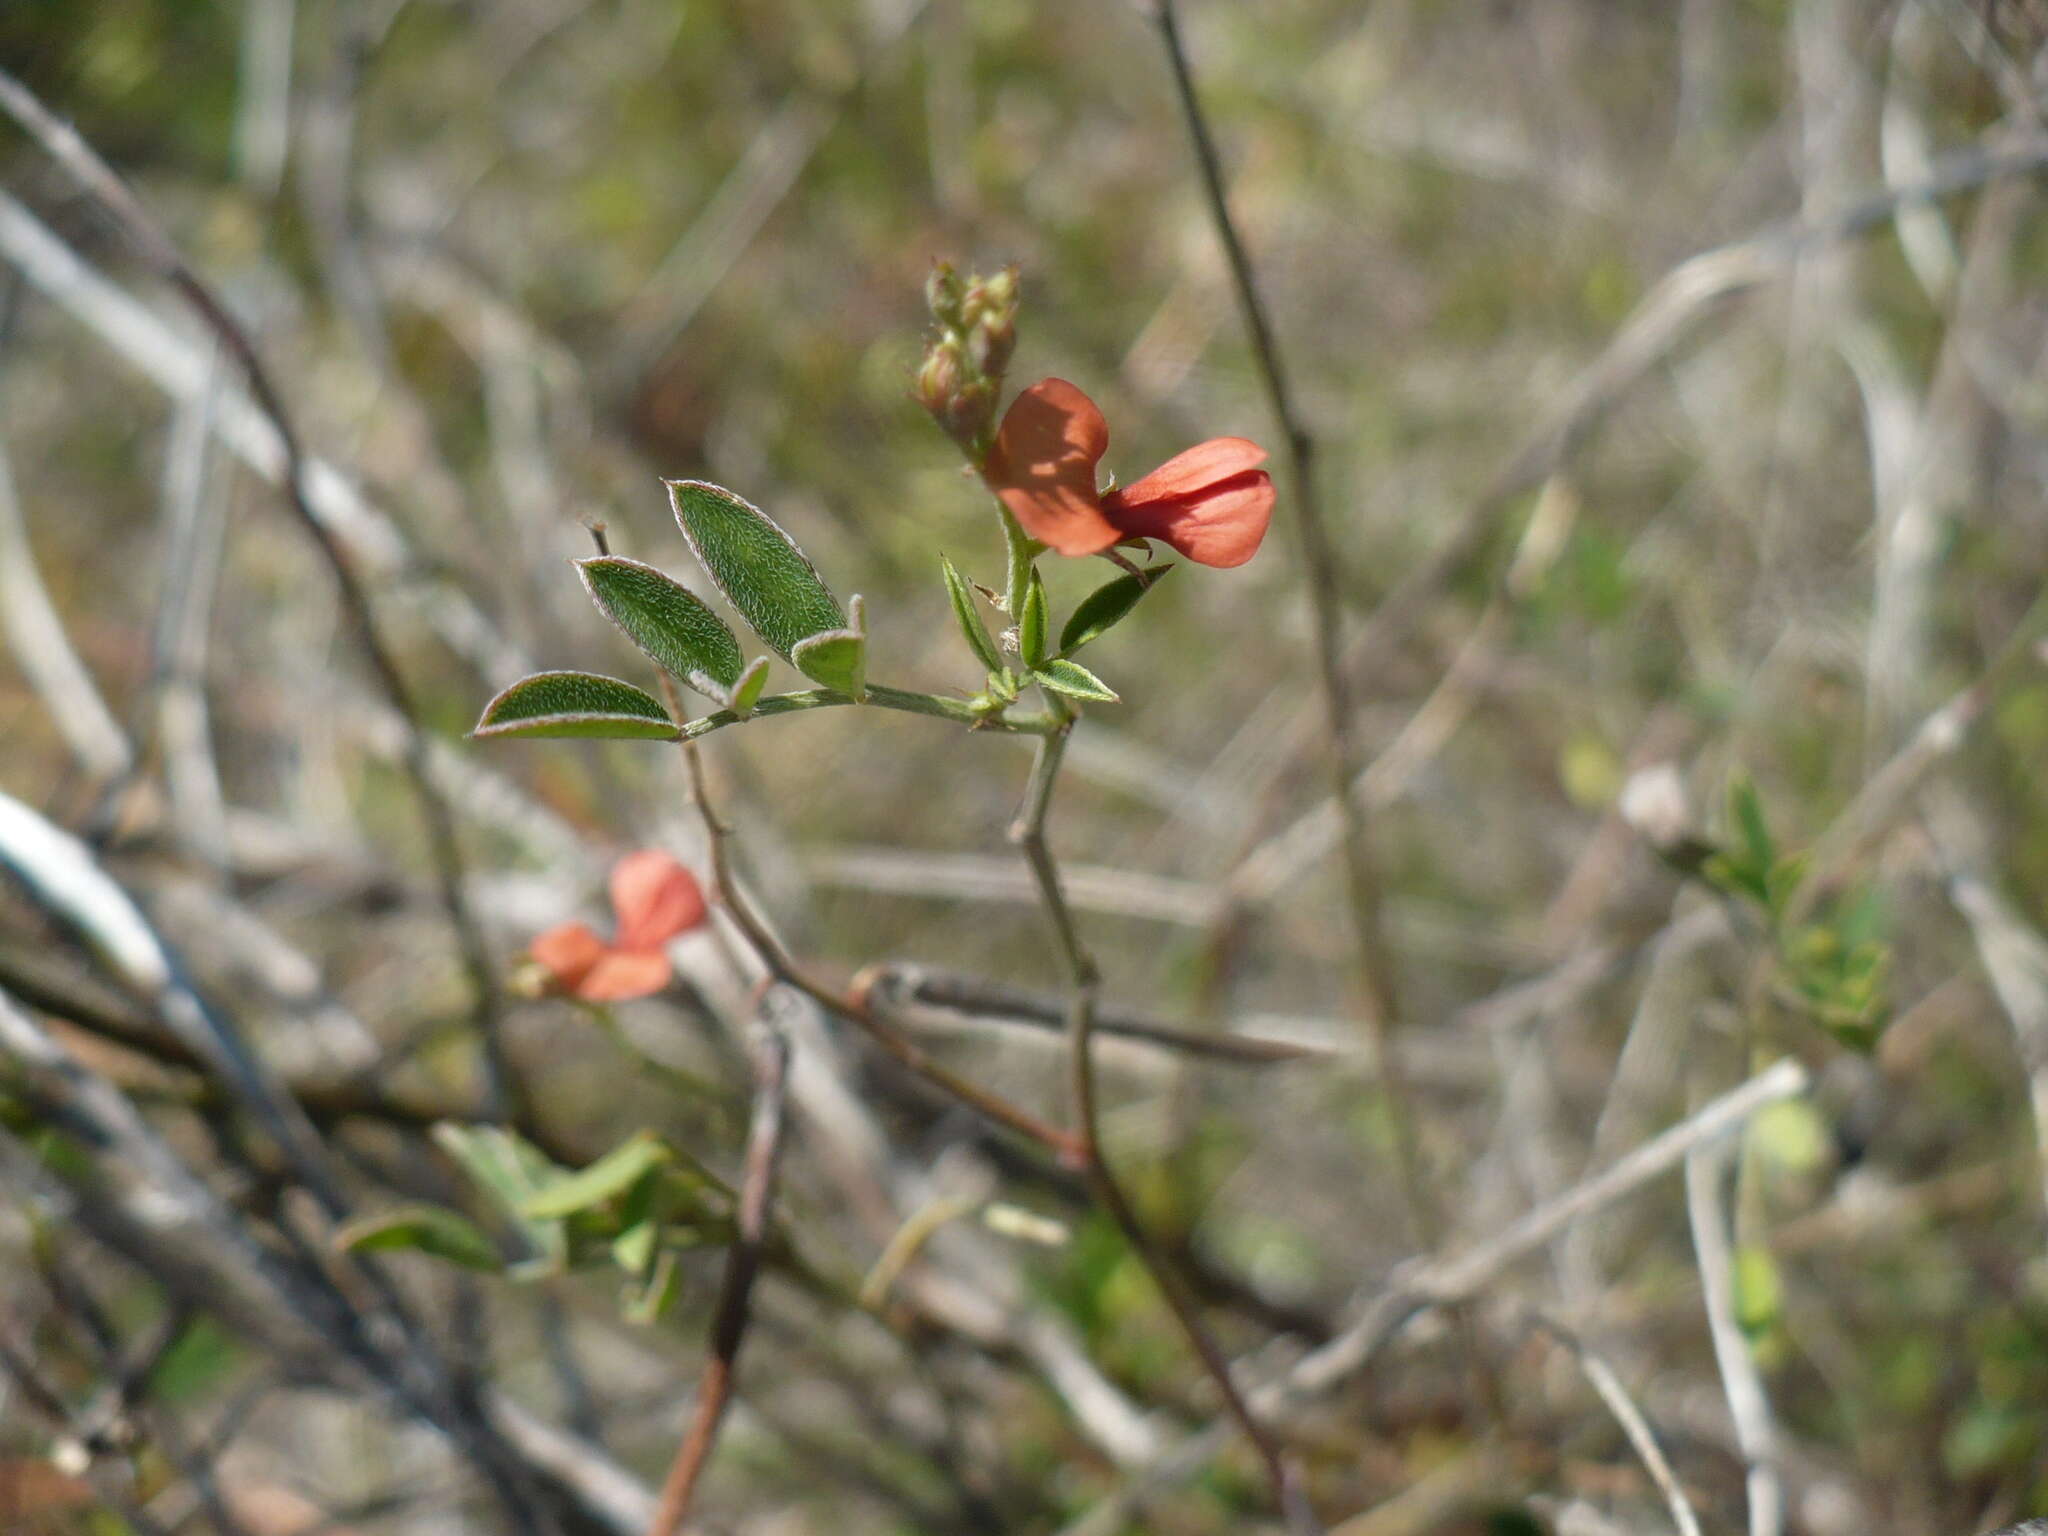 Image of Indigofera trita subsp. scabra (Roth) De Kort & G. Thijsse